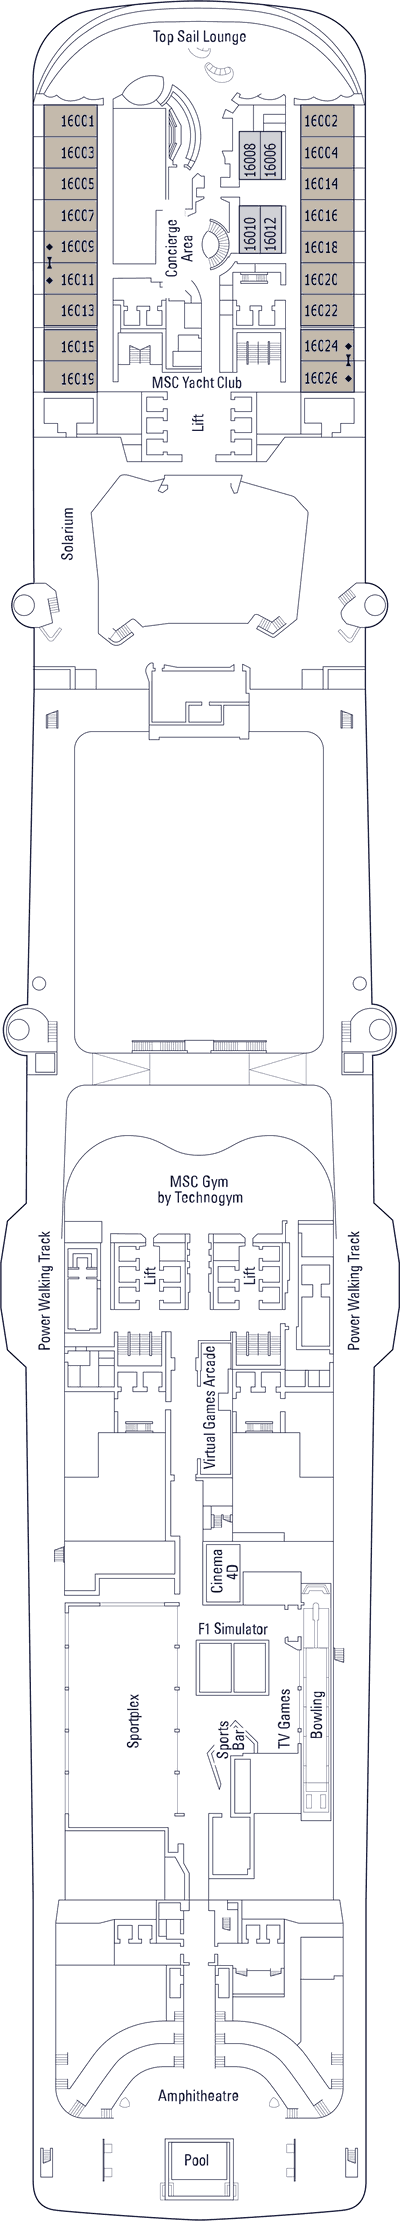 MSC Bellissima - Decksplan Deck 16